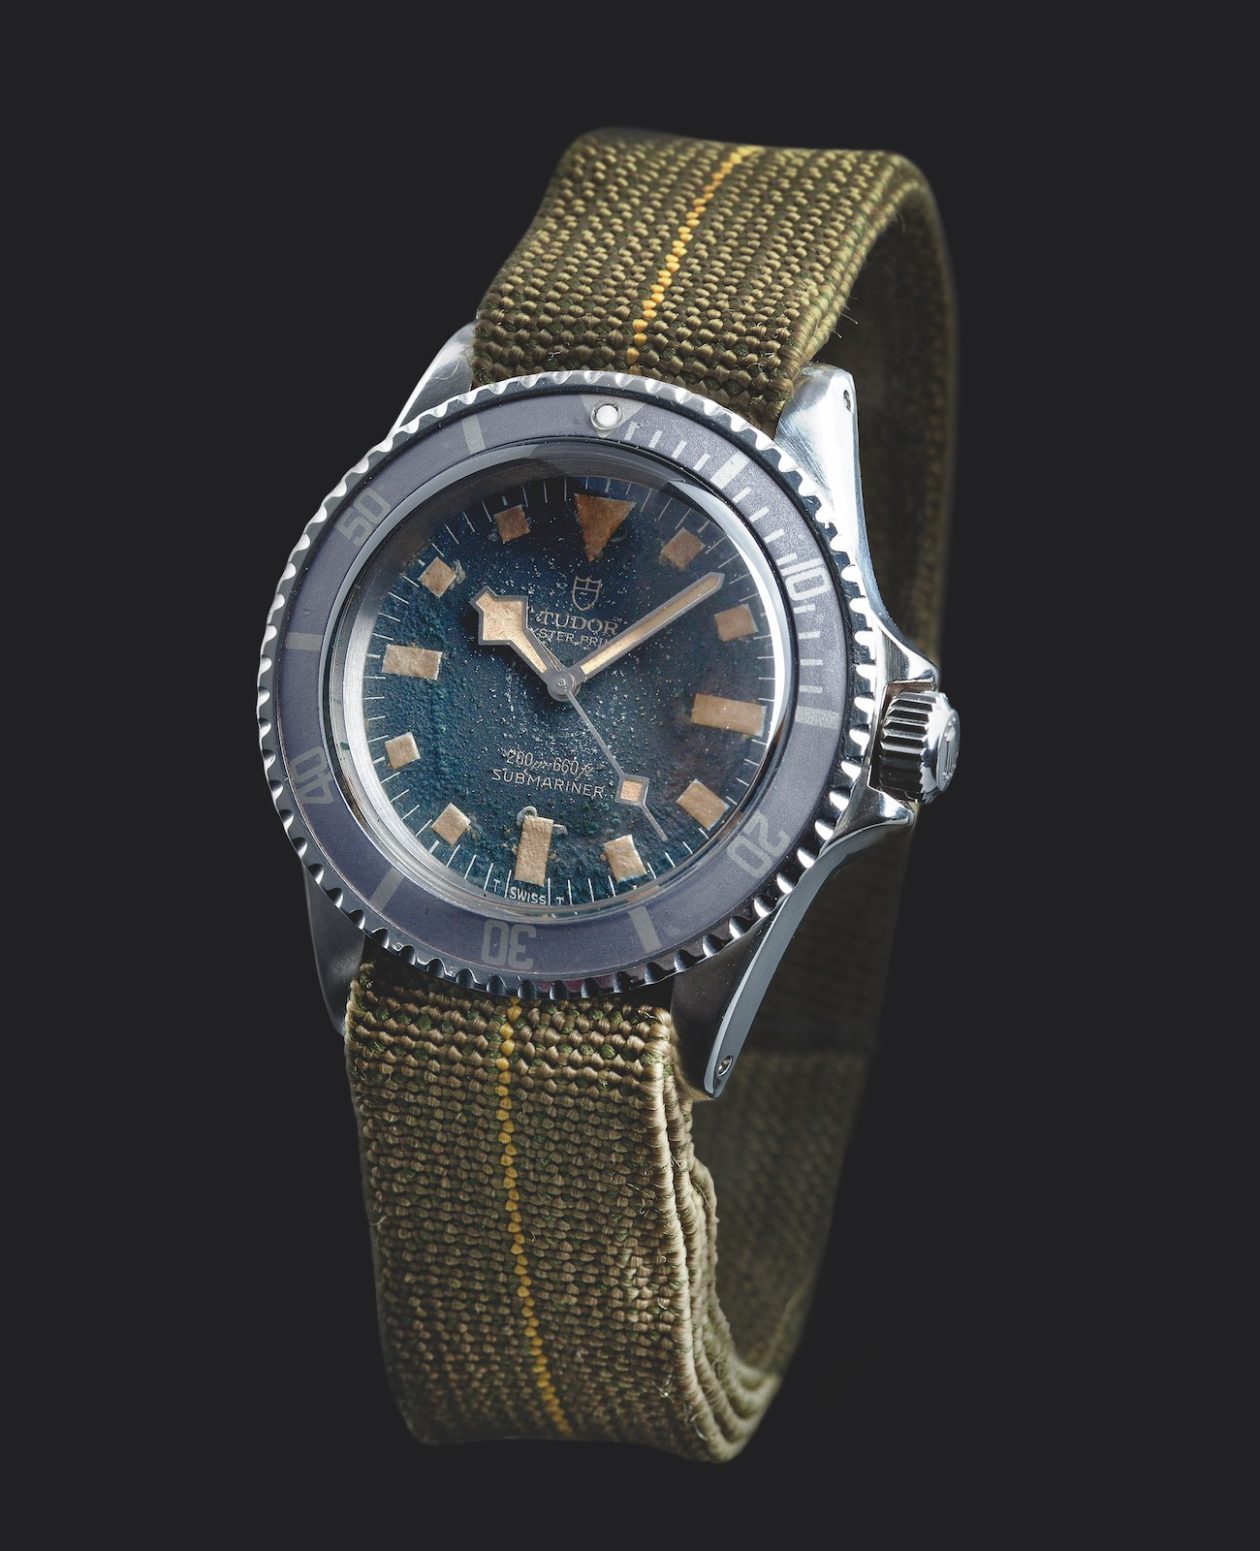 oryginalny Tudor Oyster Submarine "Marine Nationale" / foto: Monochrome-watches.com